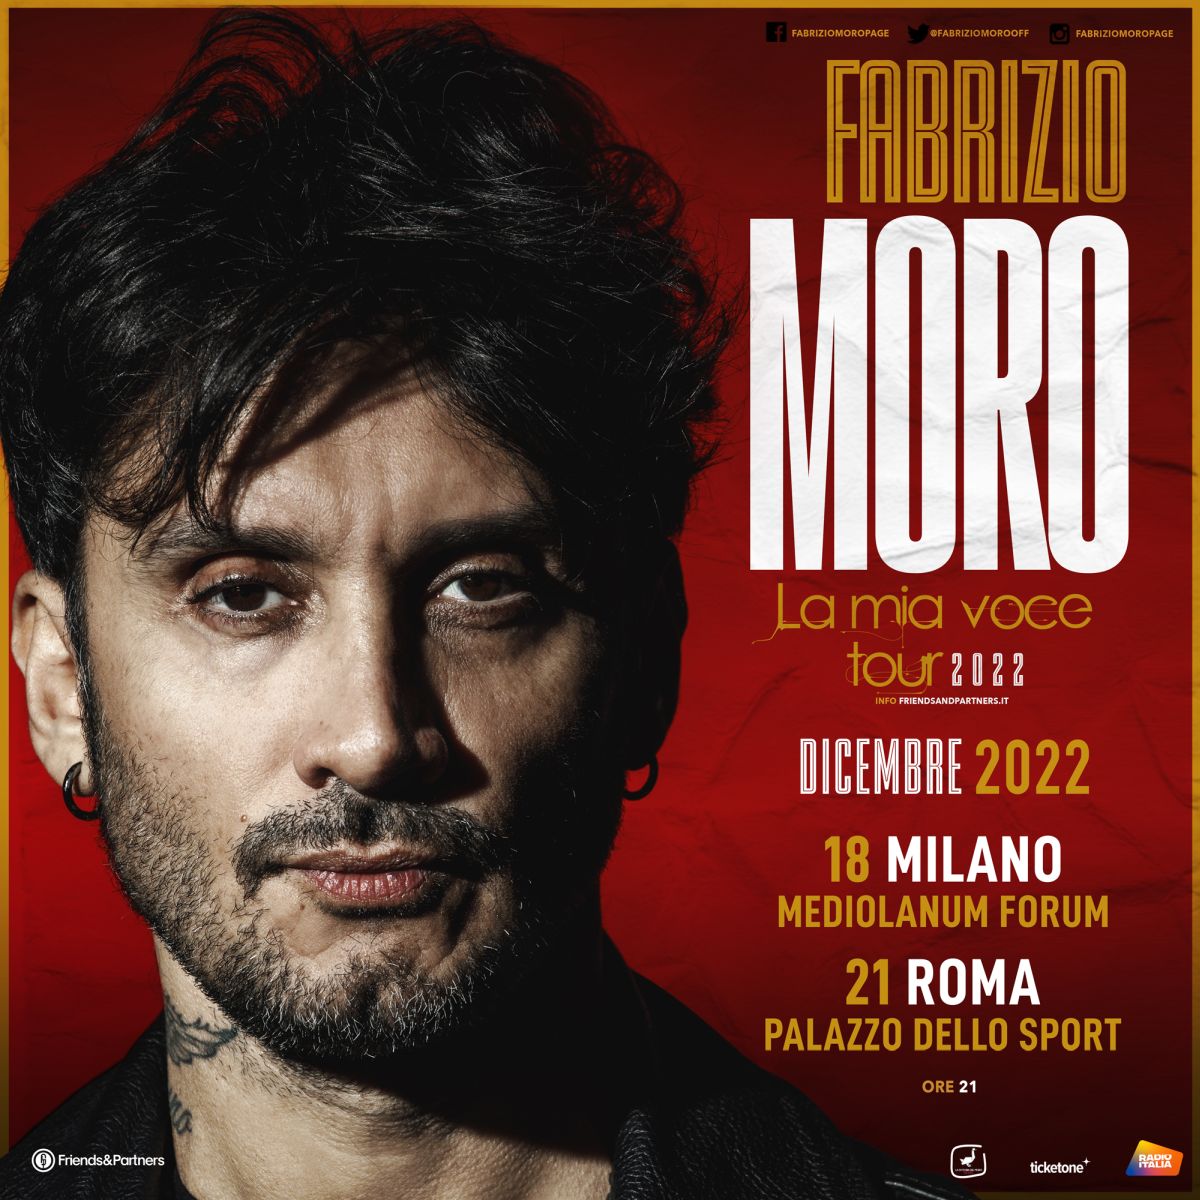 Fabrizio Moro torna live con gli ultimi due attesi appuntamenti a Milano e Roma